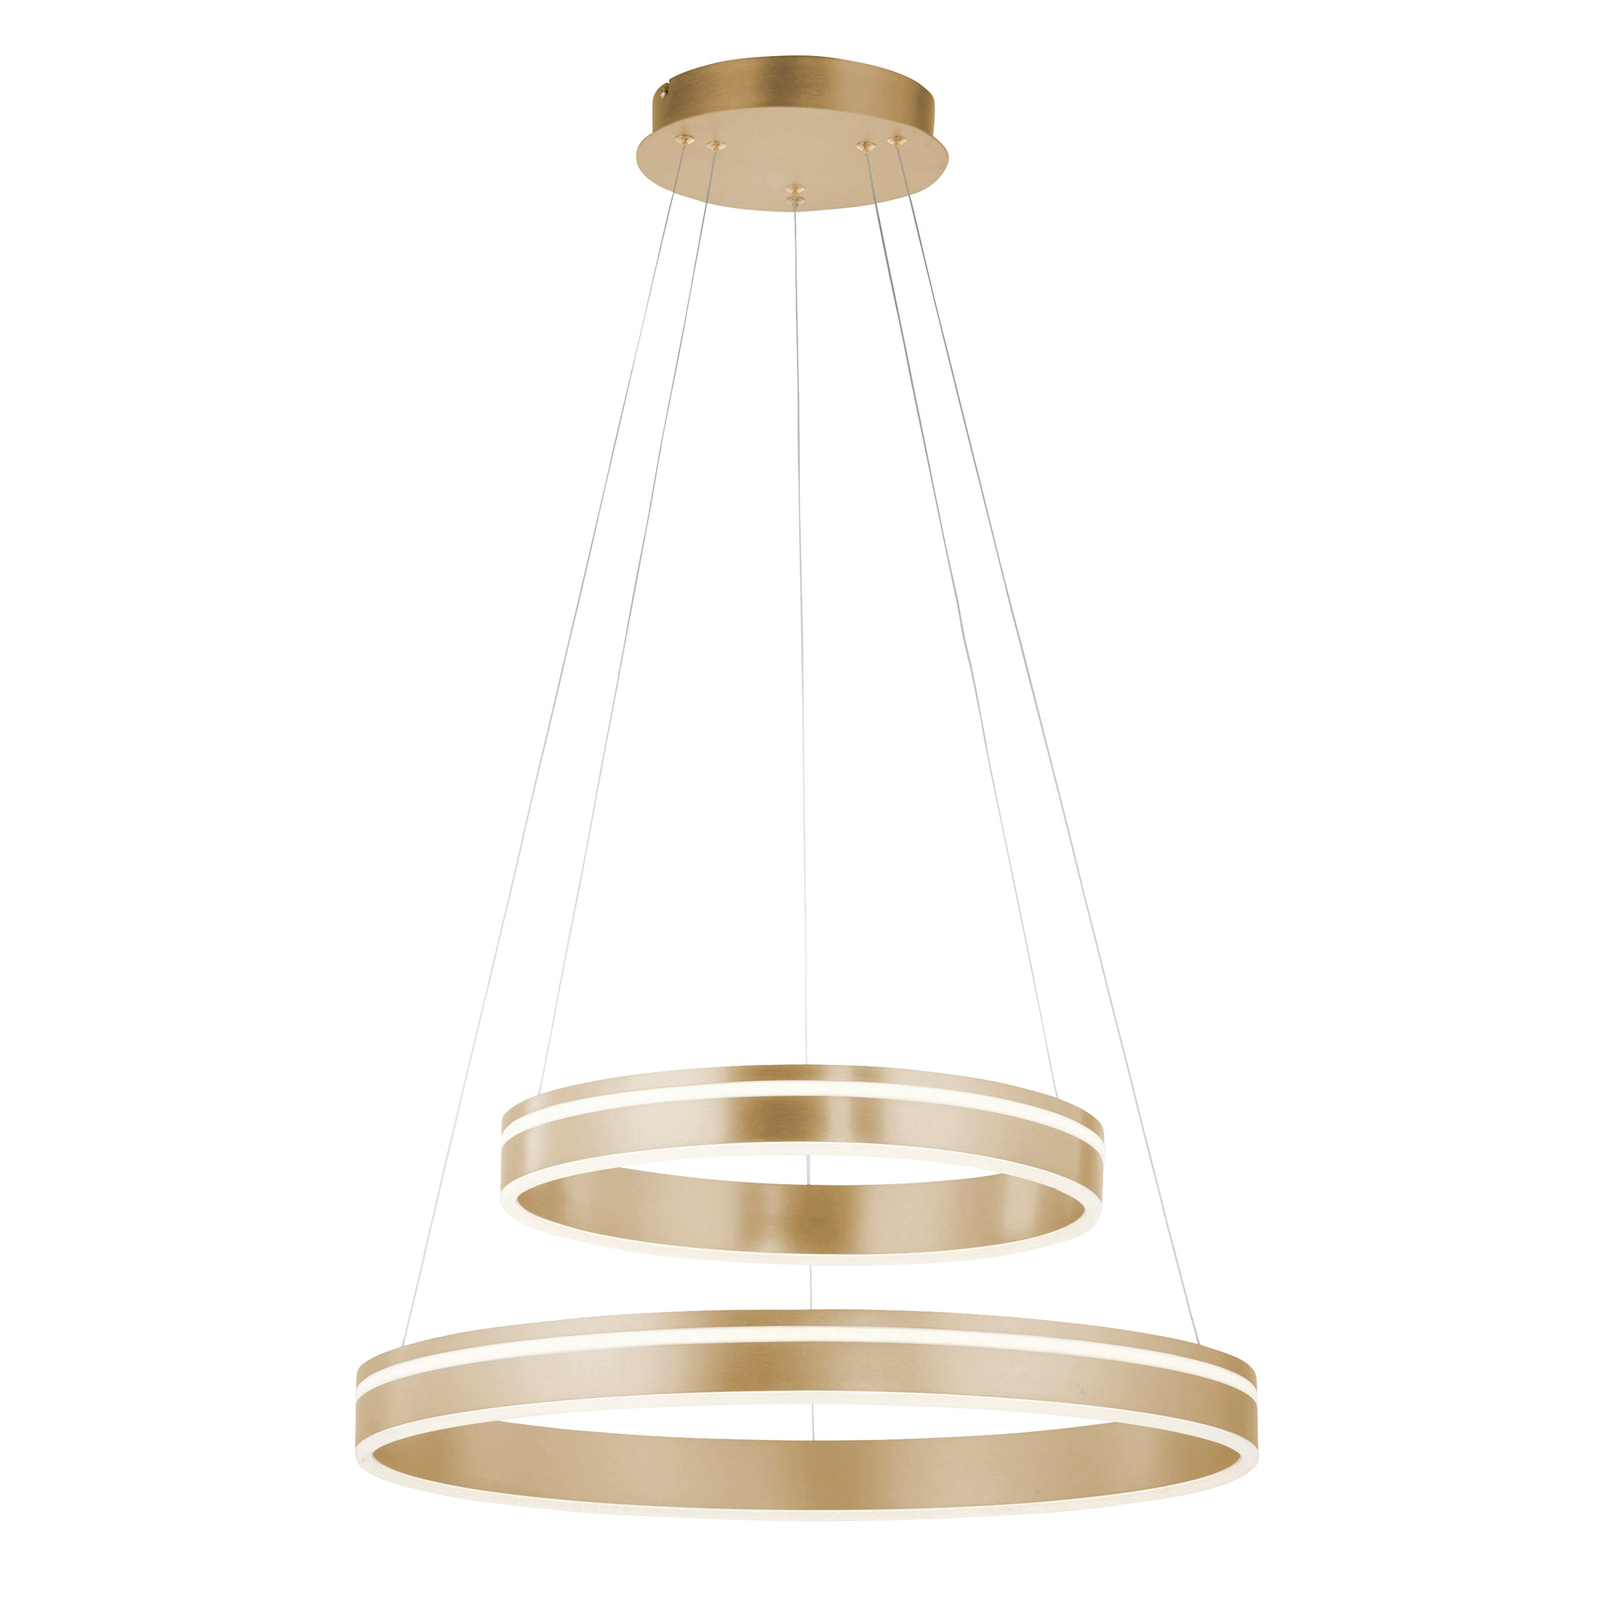 Paul Neuhaus Q-VITO lámpara colgante LED 2 anillos